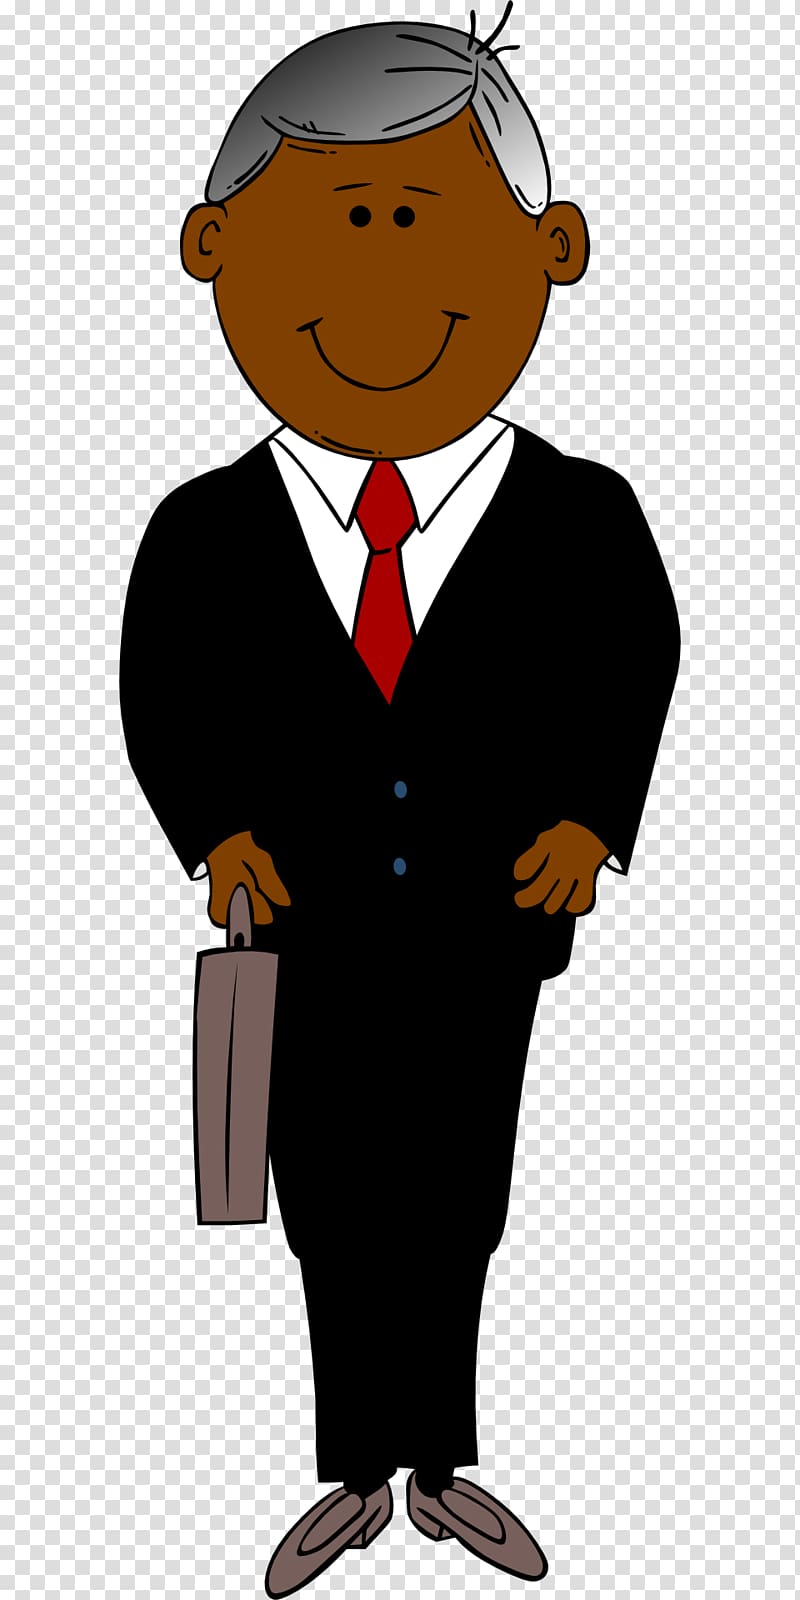 Businessperson , suit transparent background PNG clipart